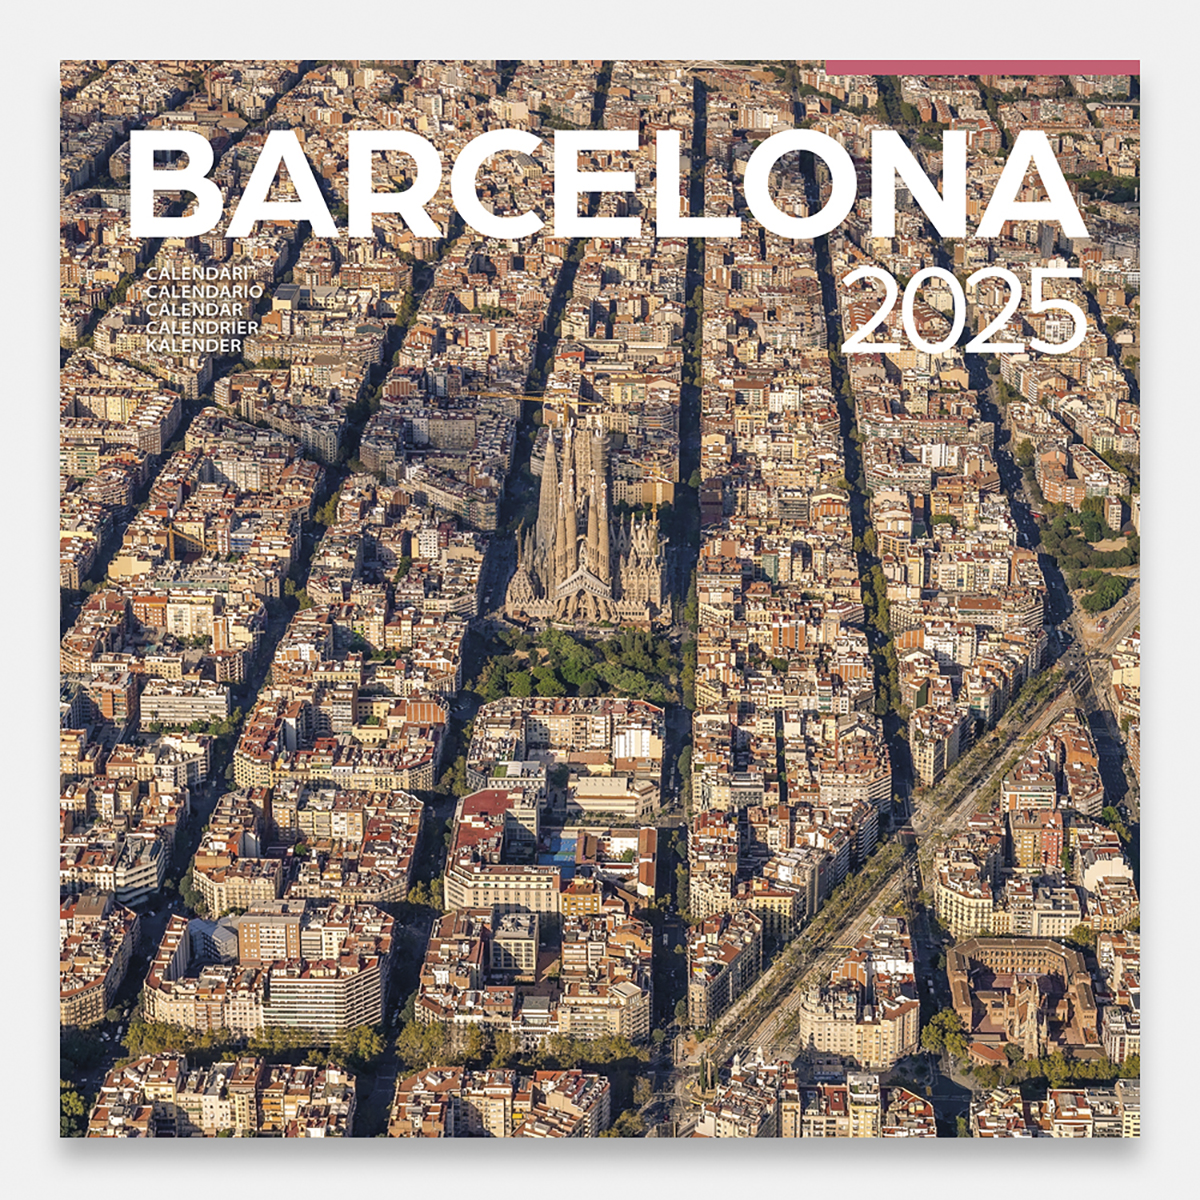 Calendario 2025 Barcelona 25bg2 calendario pared 2025 barcelona